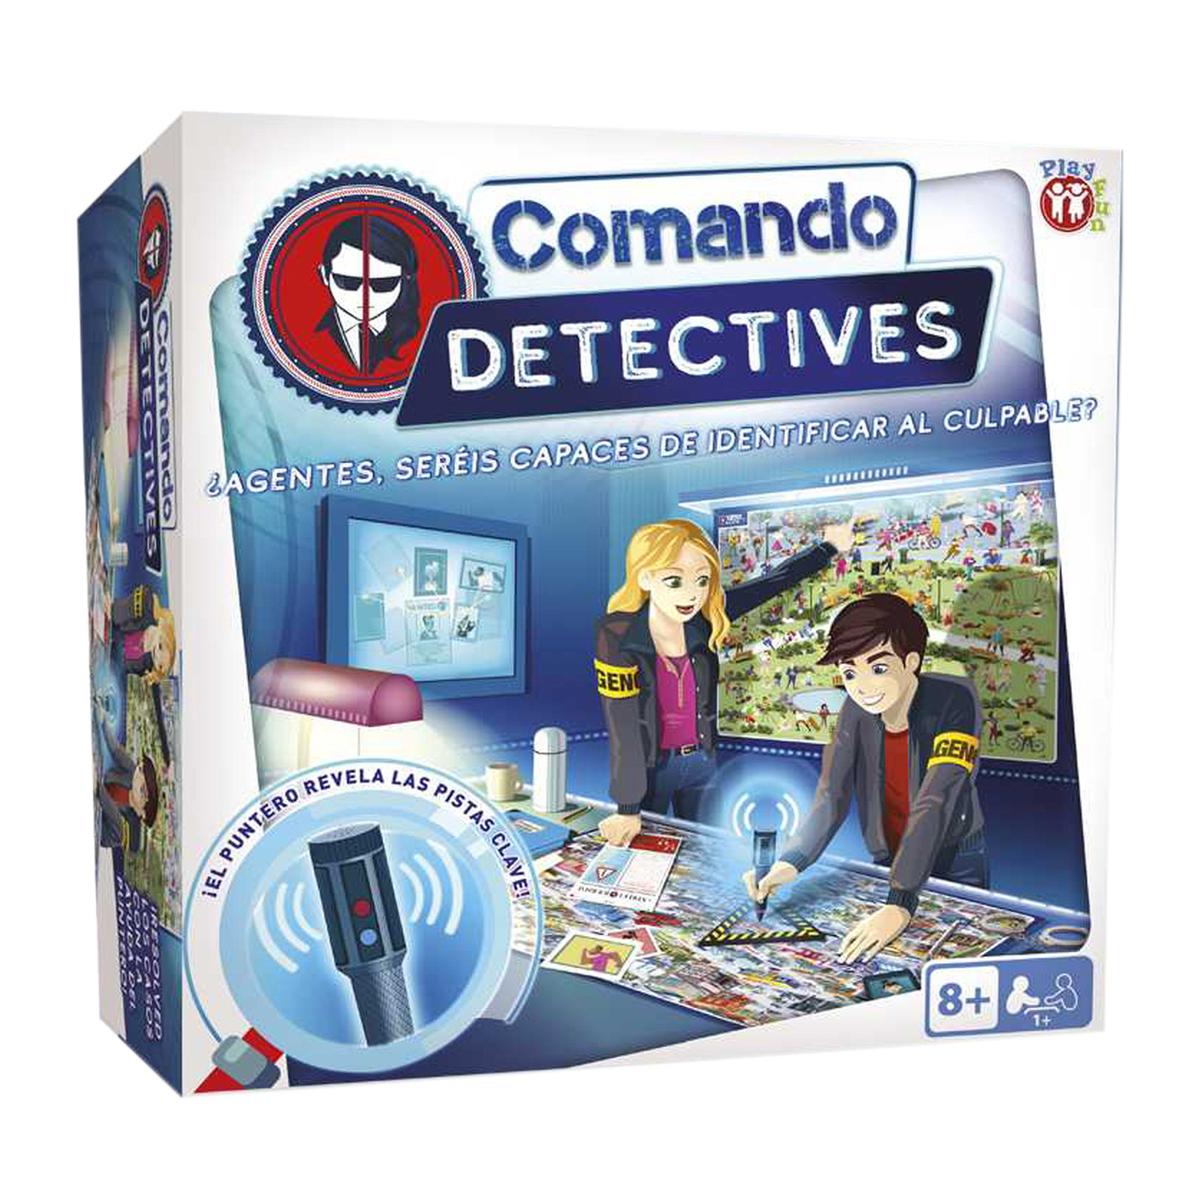 Comando Detectives | Toys Toys"R"Us España